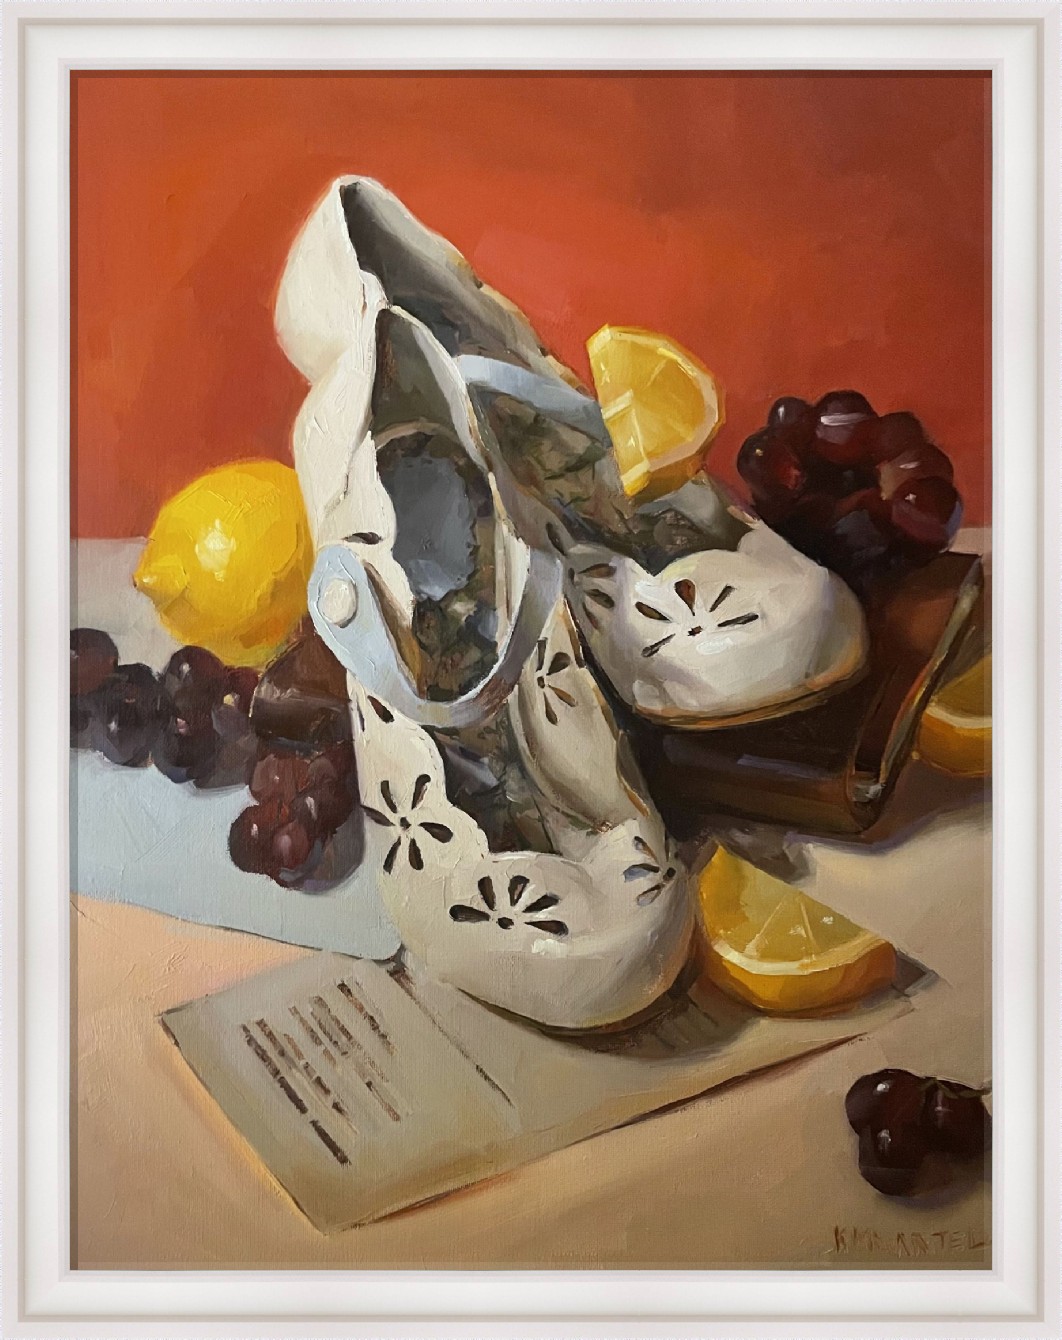 About a Lemon & a Shoe by Kayla Martell